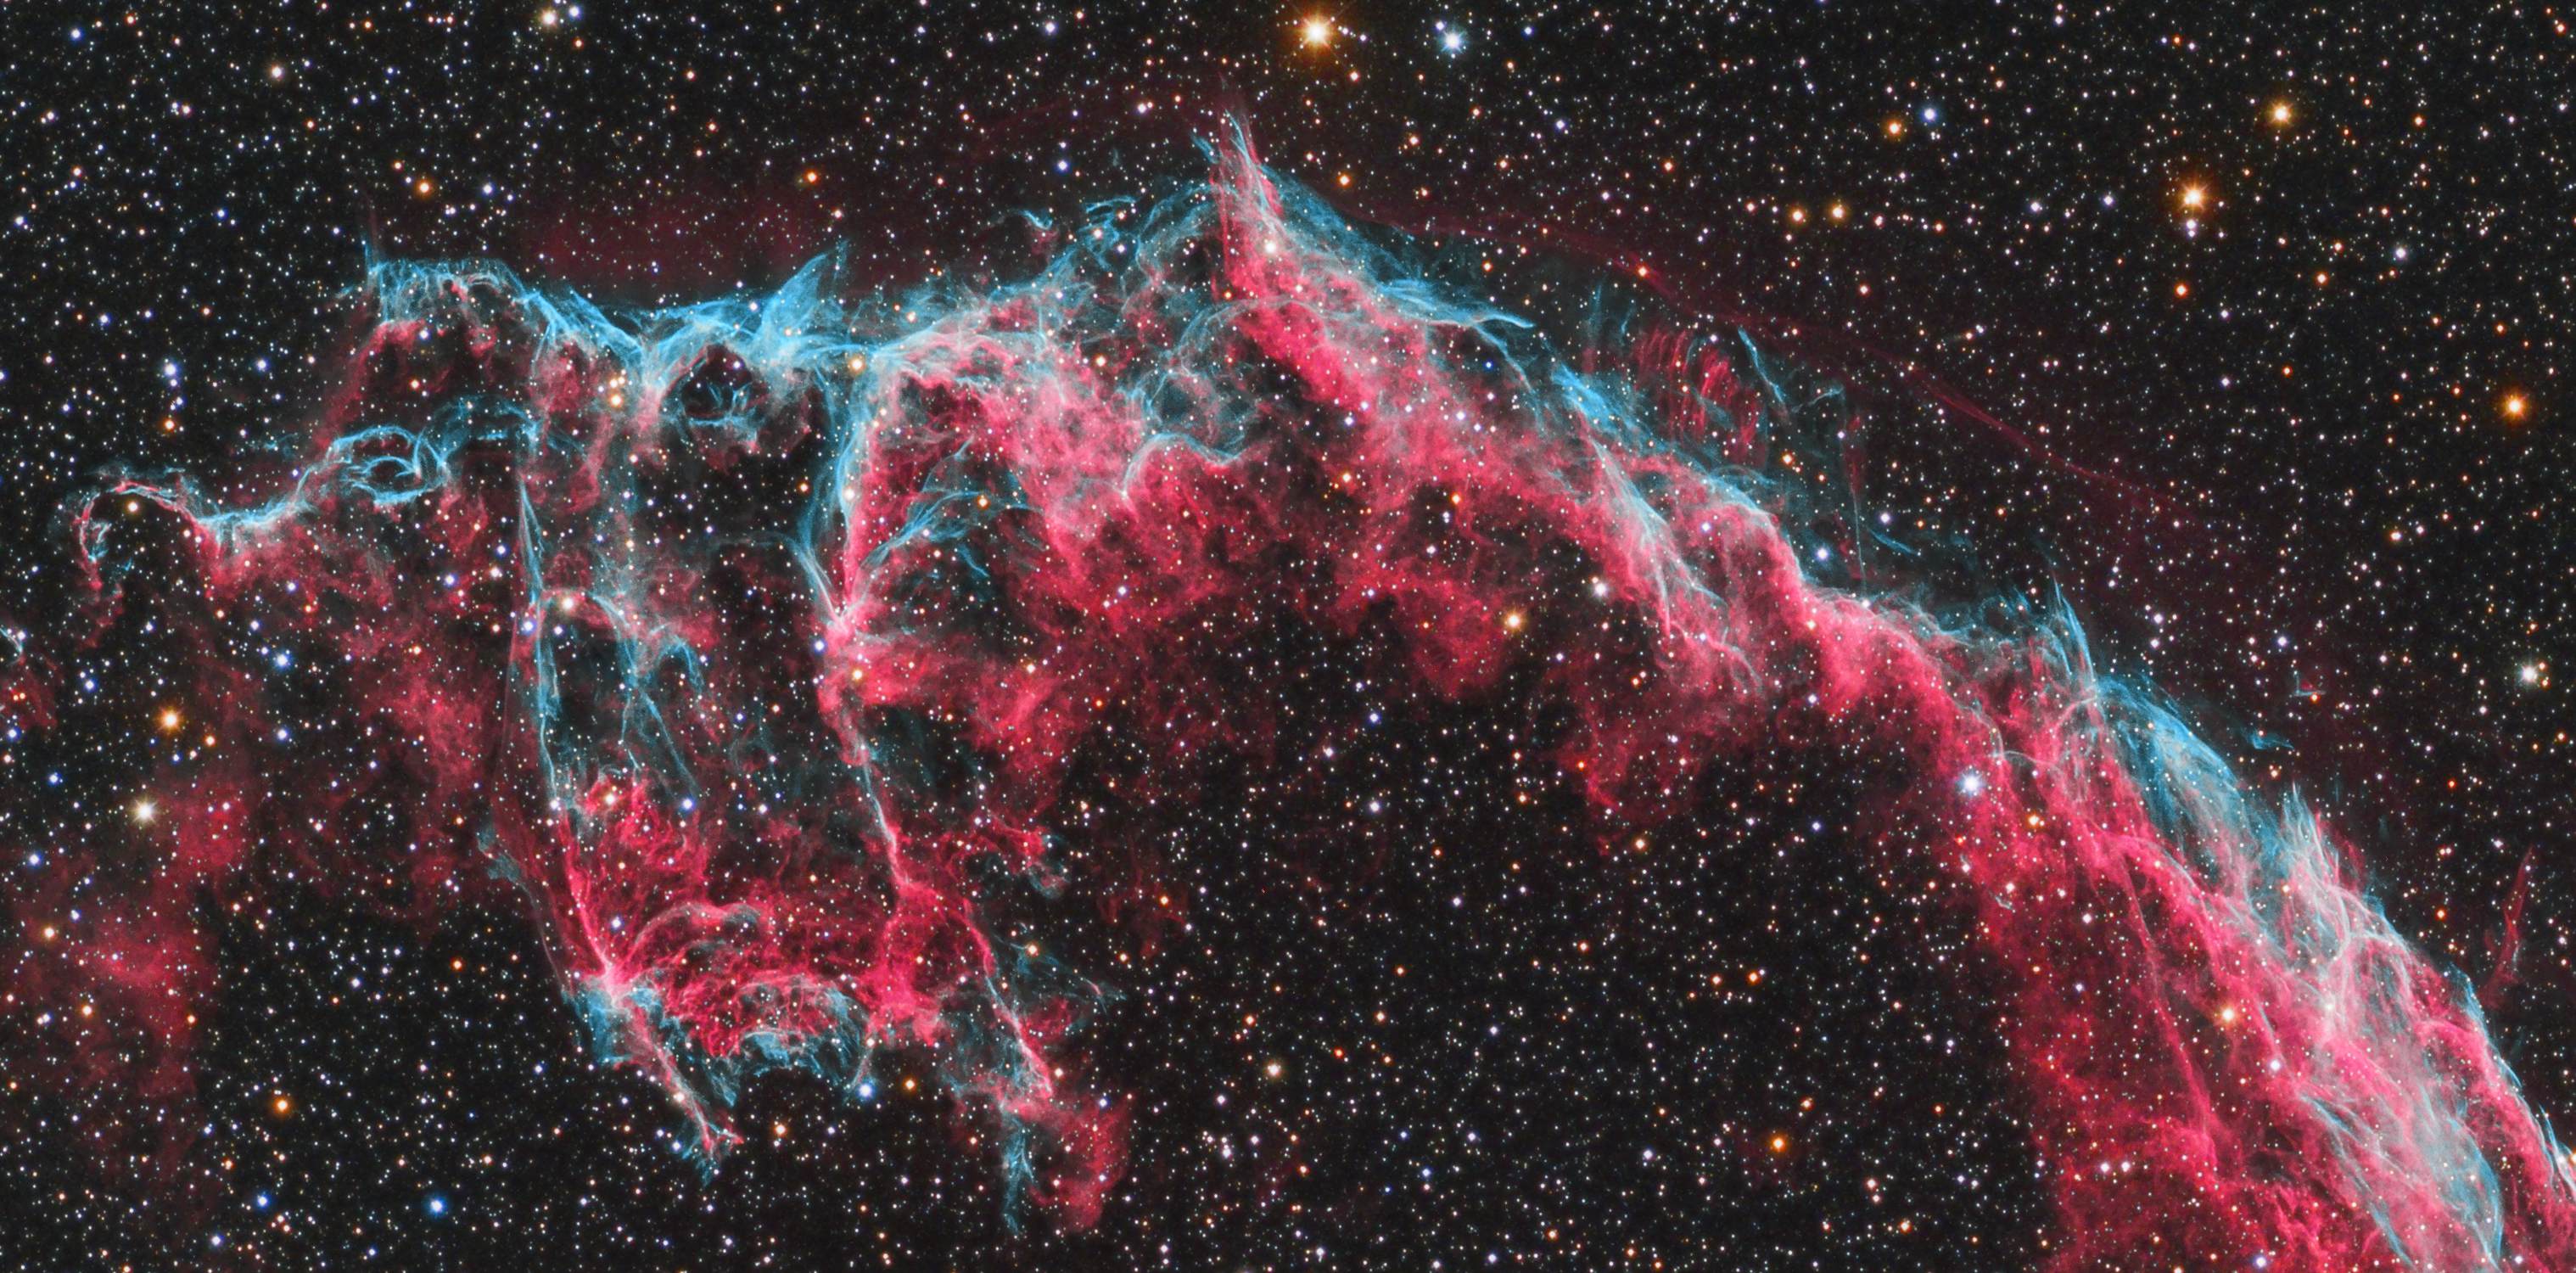 Veil NGC 6992